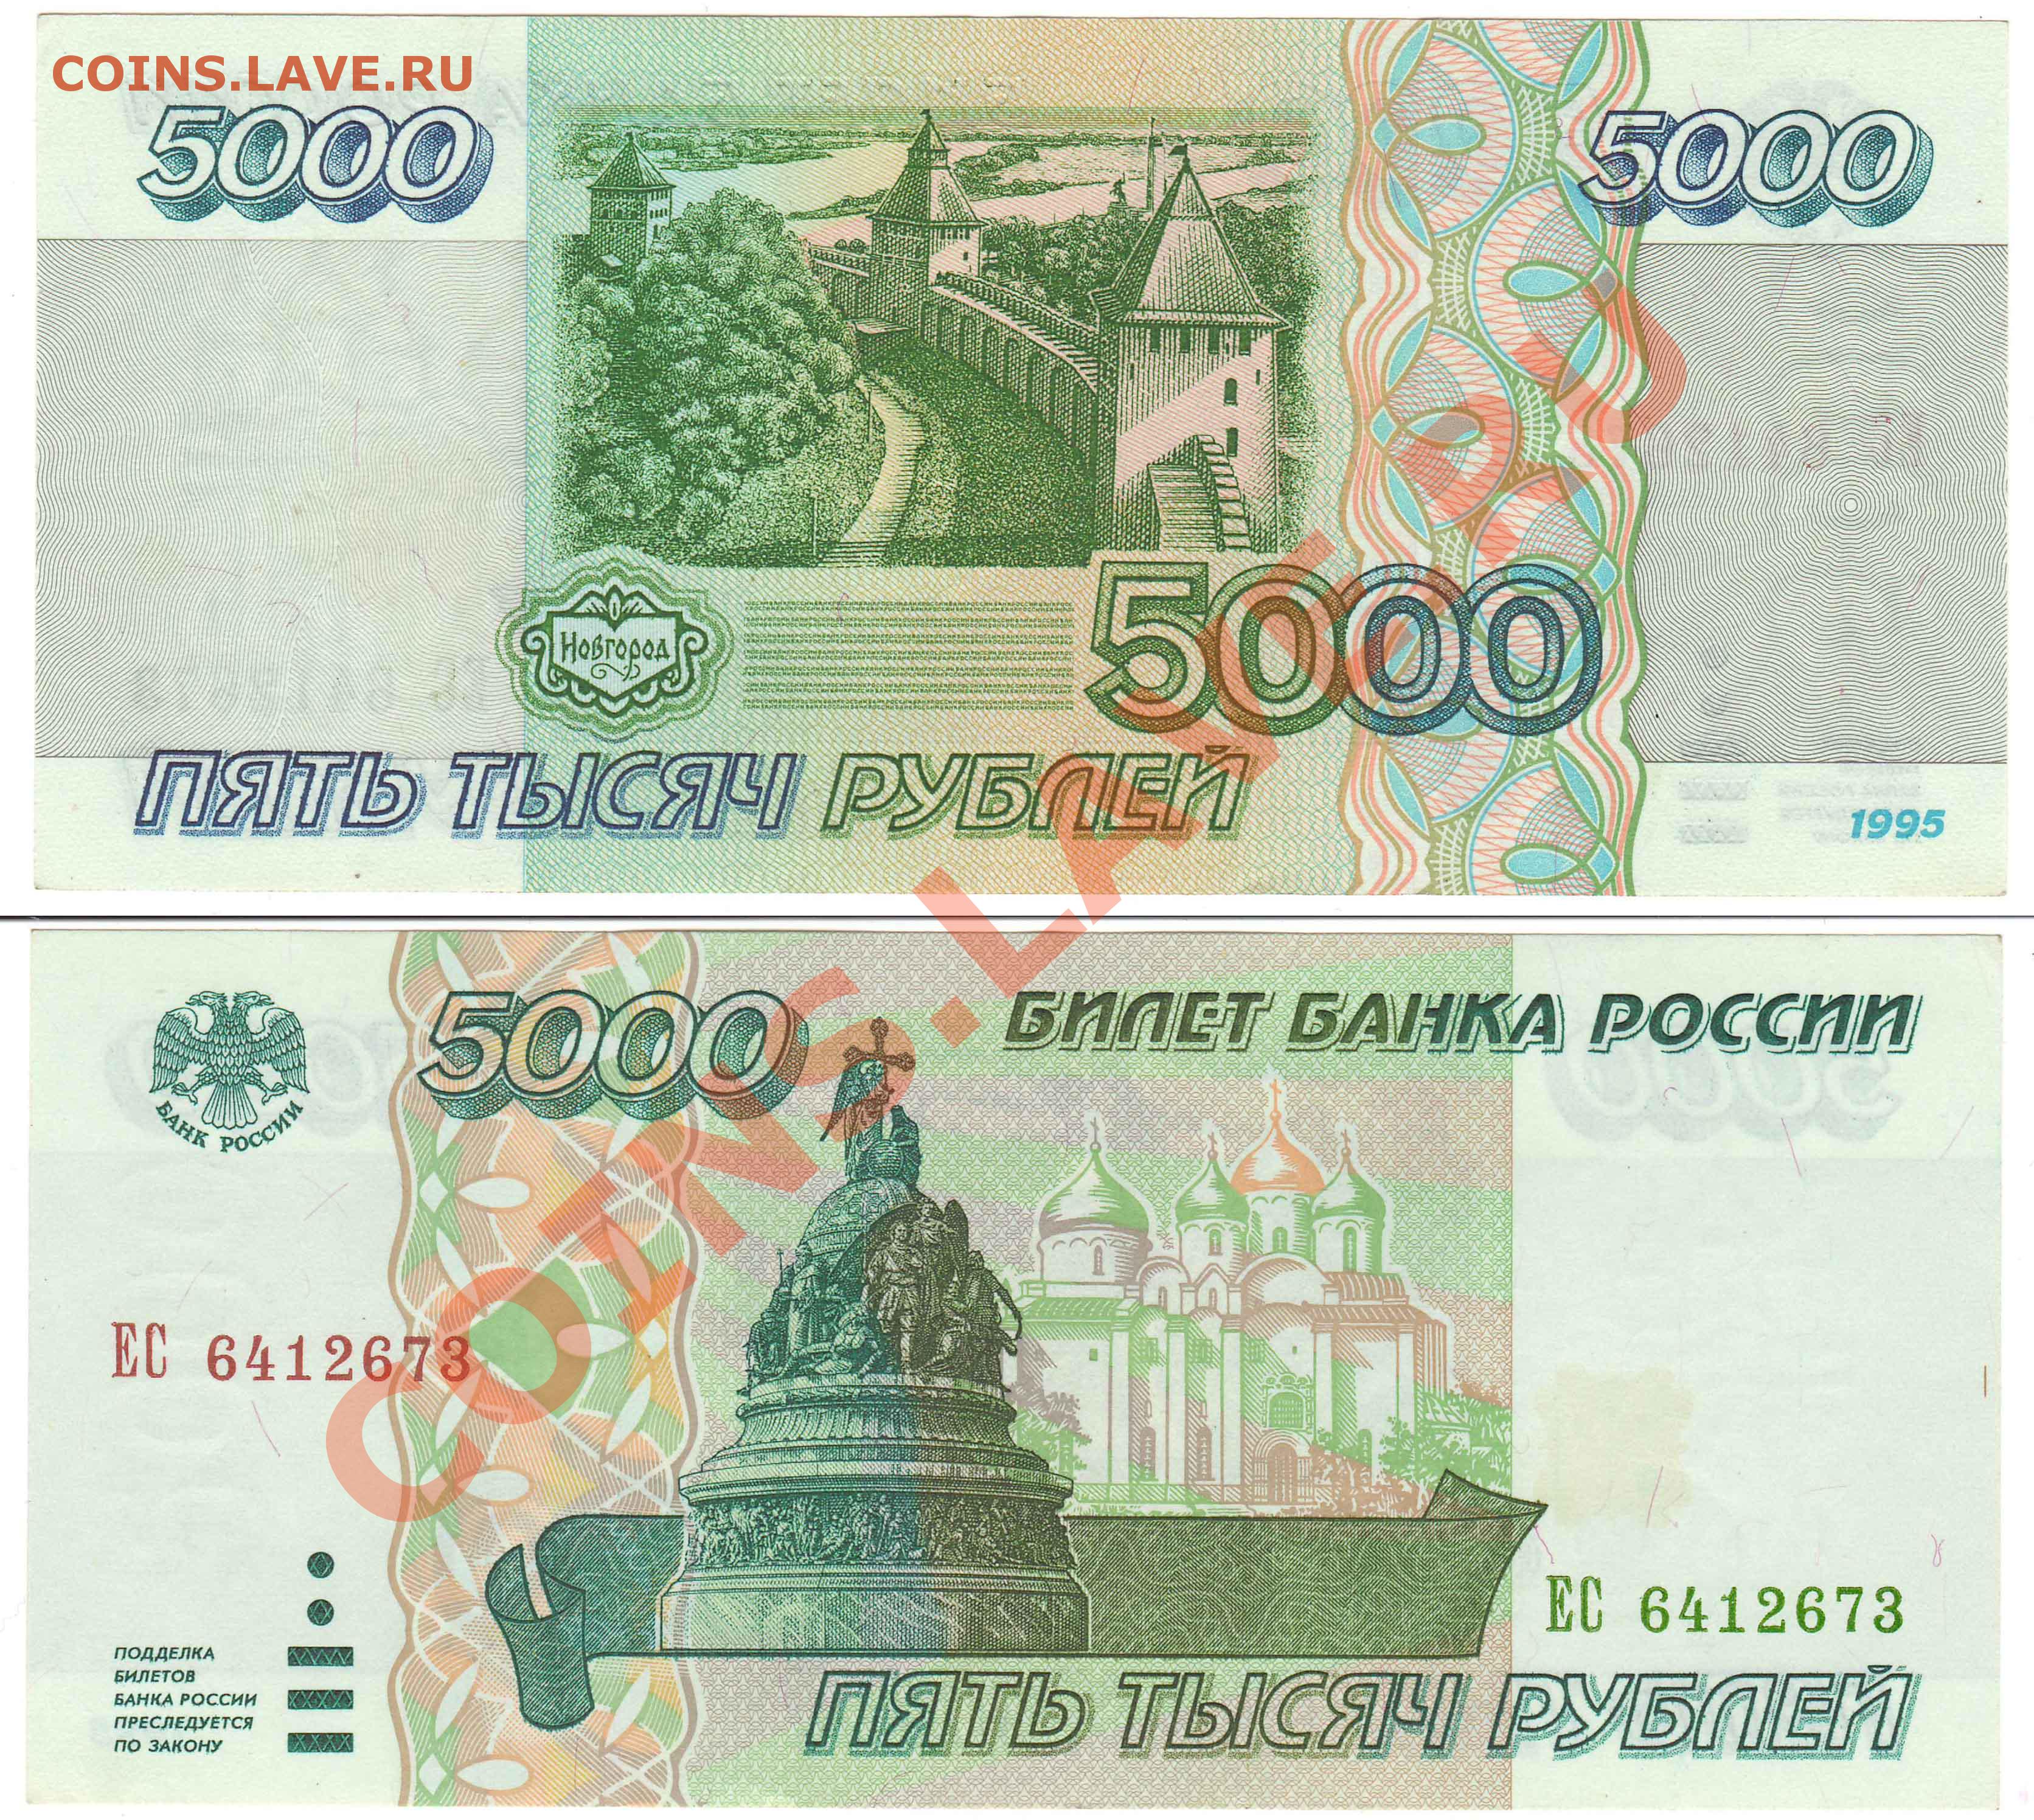 5 рублей зеленые. 5000 Рублей купюра 1995. Банкнота 5000 рублей 1995. Банкнота 5000 рублей 1995 года. Деньги 1995 года в России.